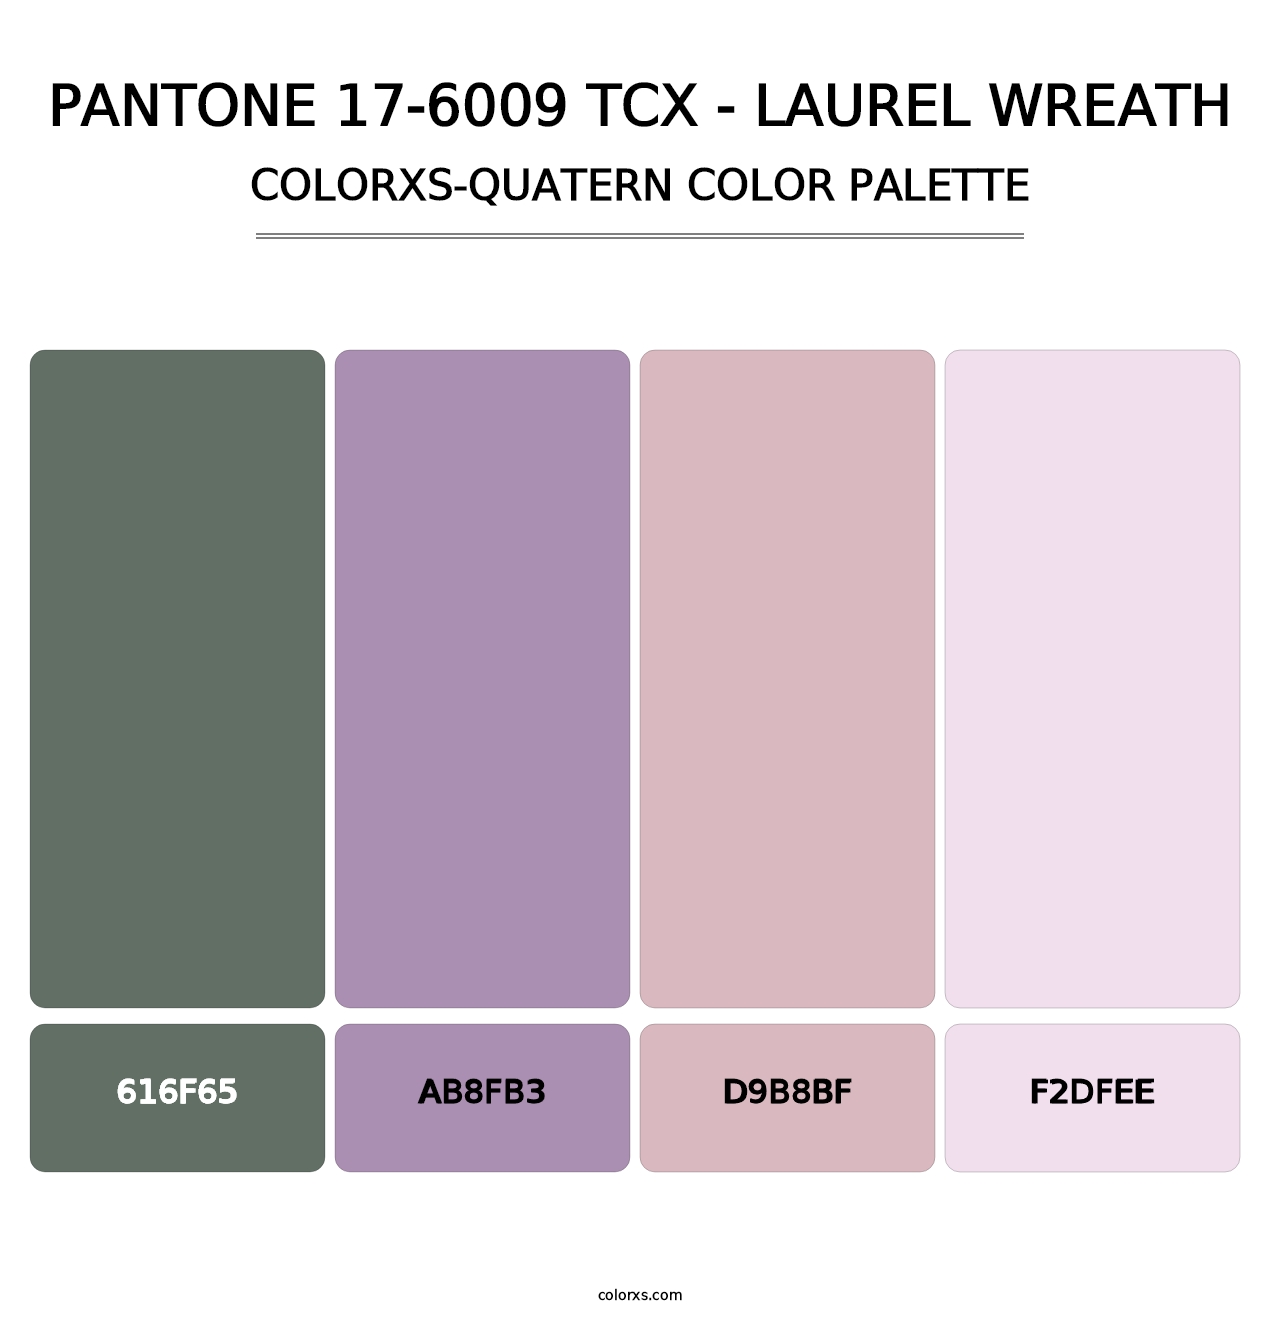 PANTONE 17-6009 TCX - Laurel Wreath - Colorxs Quatern Palette